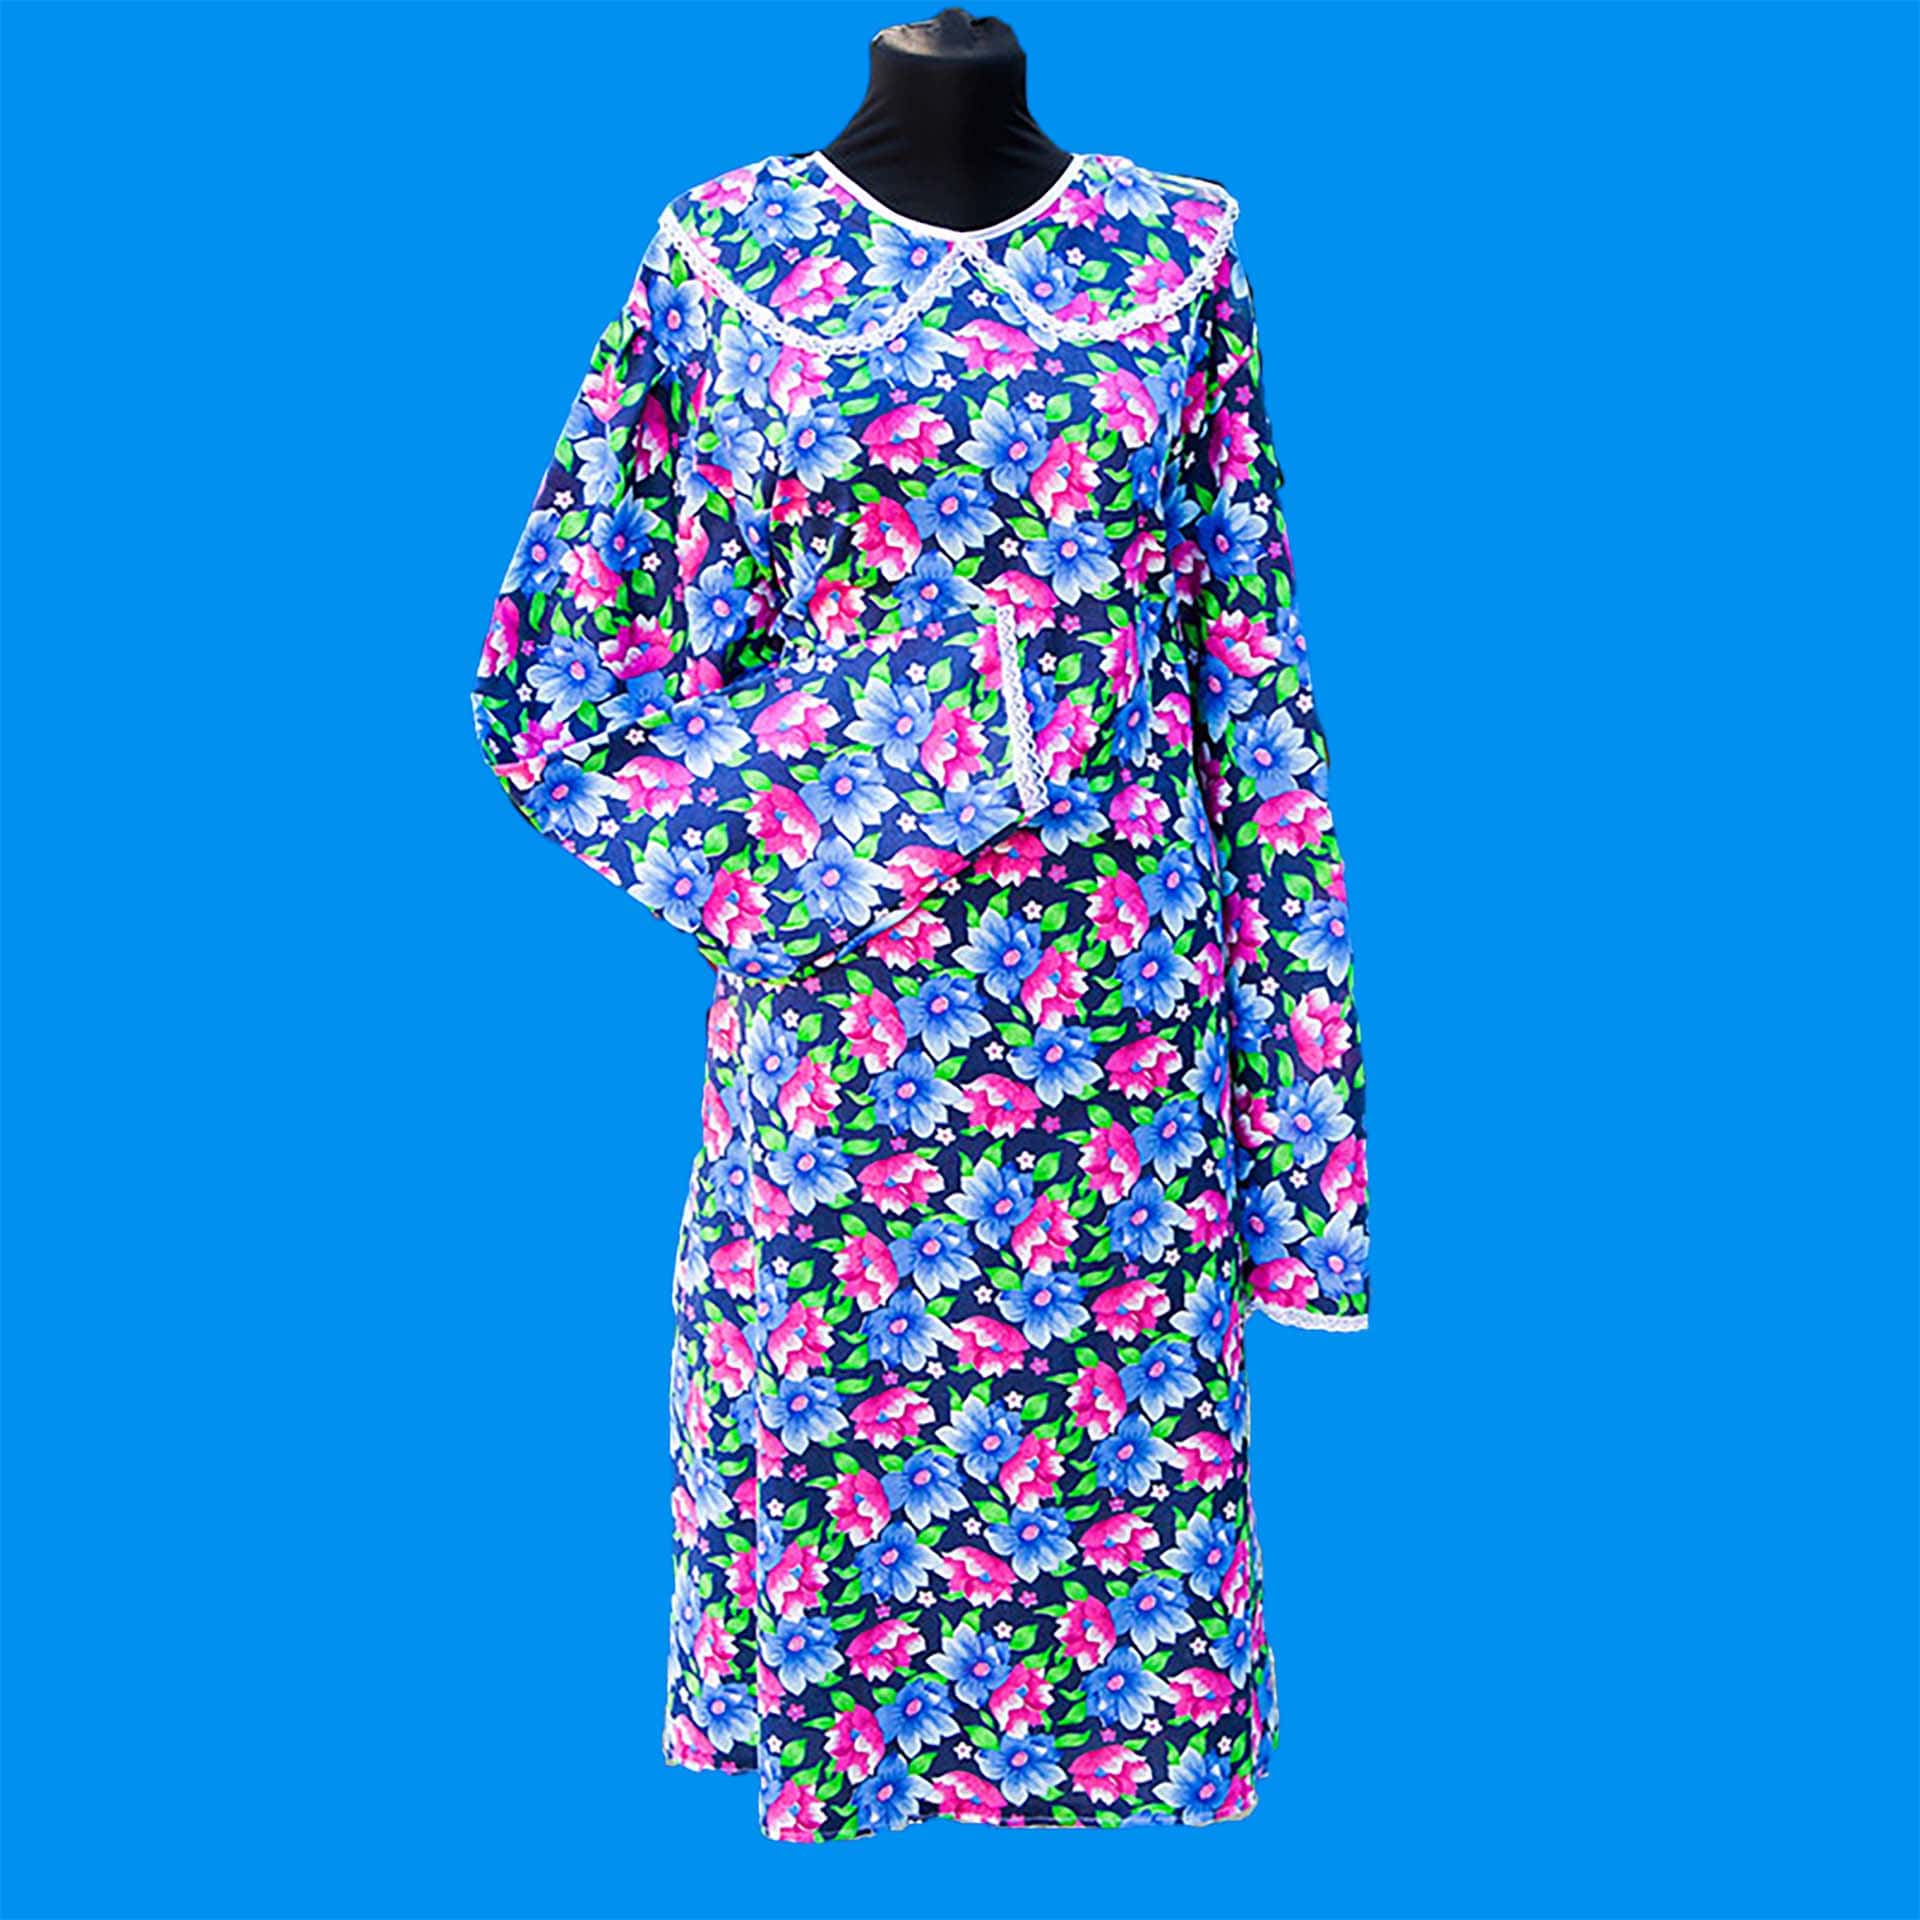 35801 Платье "Бабушкино" из ситца 100% хлопок с кружевом РАСПРОДАЖА